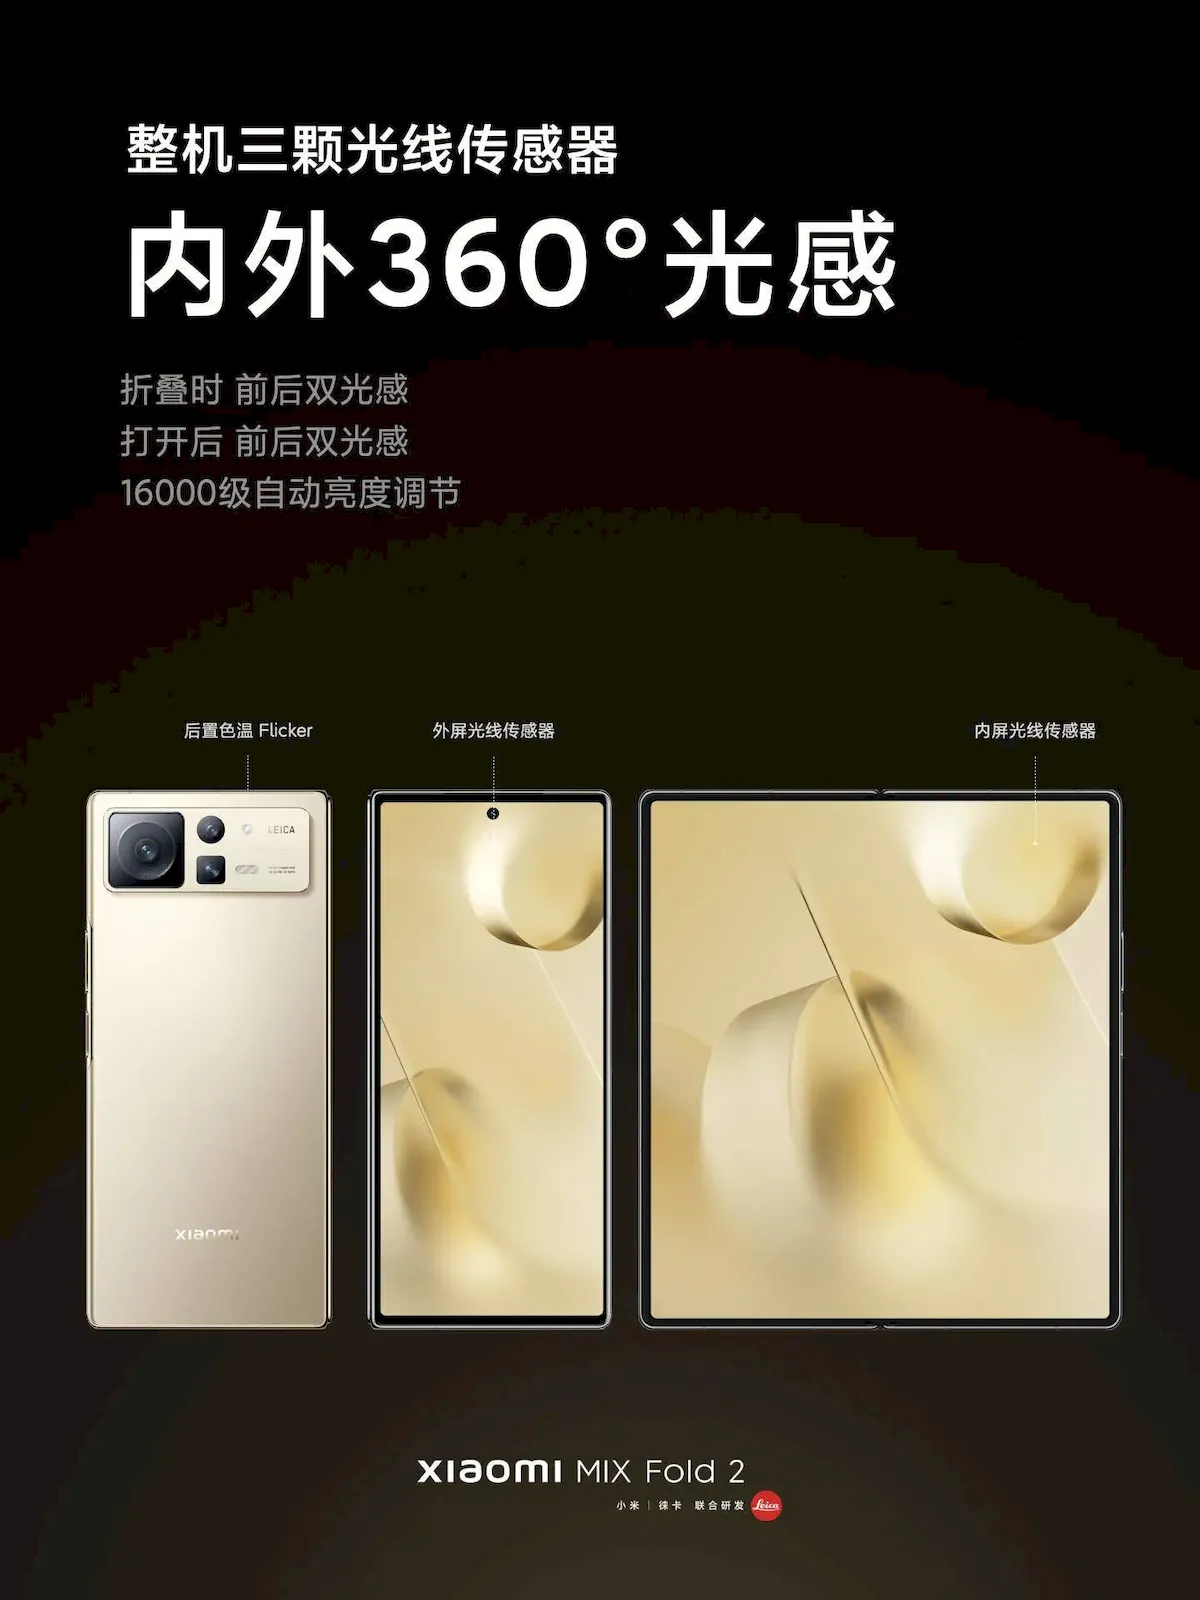 Xiaomi MIX Fold 2 lançado com aparência redesenhada